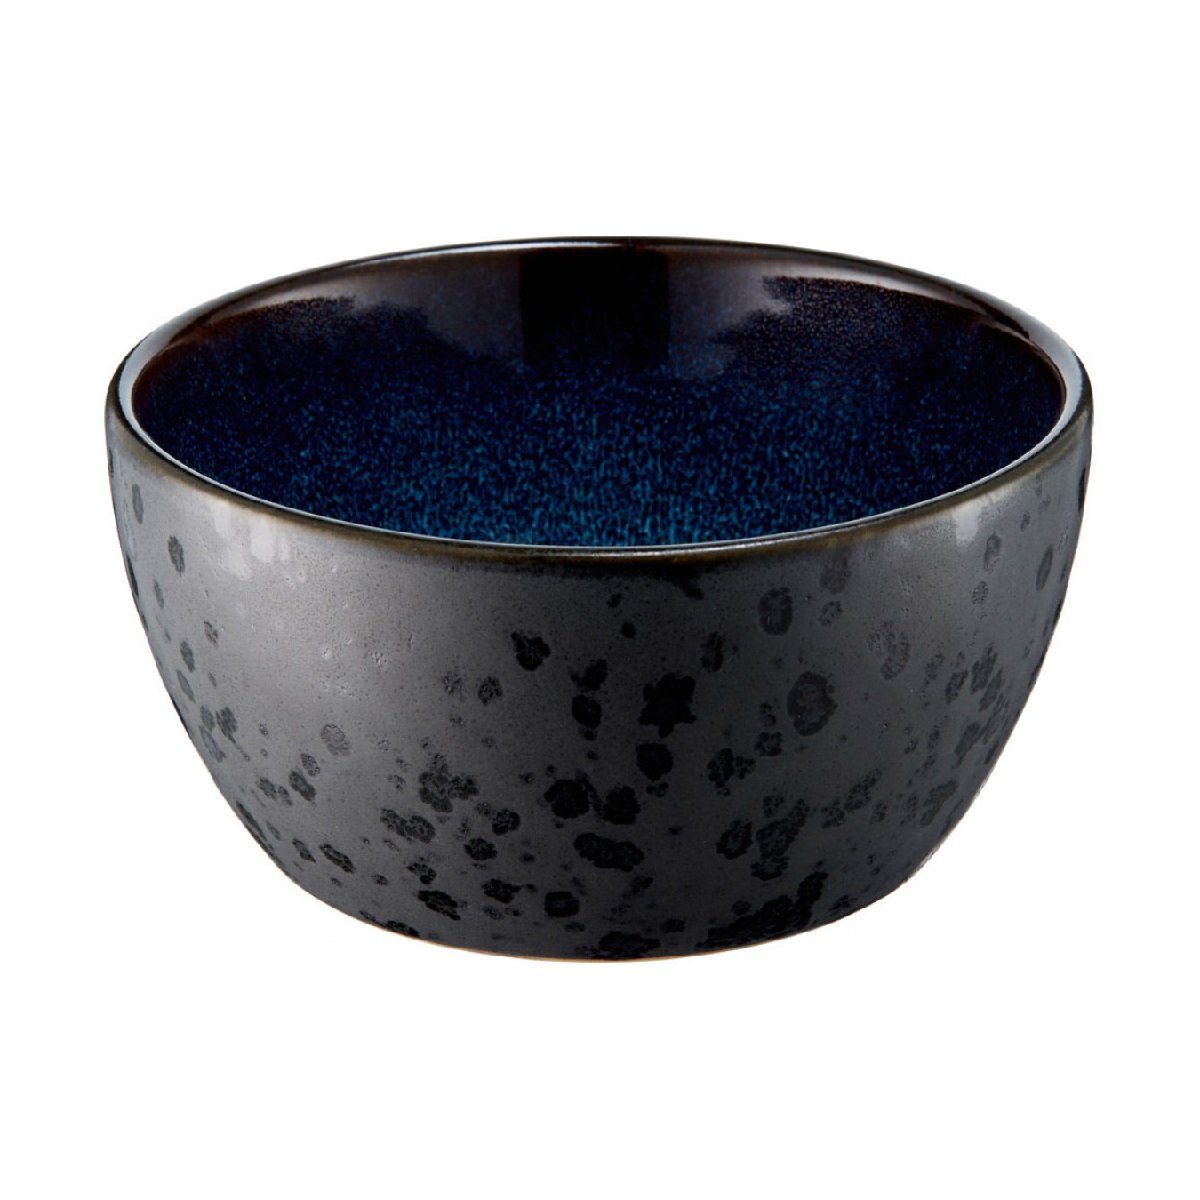 Bitz Schüssel Gastro black dark / cm d: 6 h: blue, 12 schwarz/dunkelblau Steinzeug, / cm